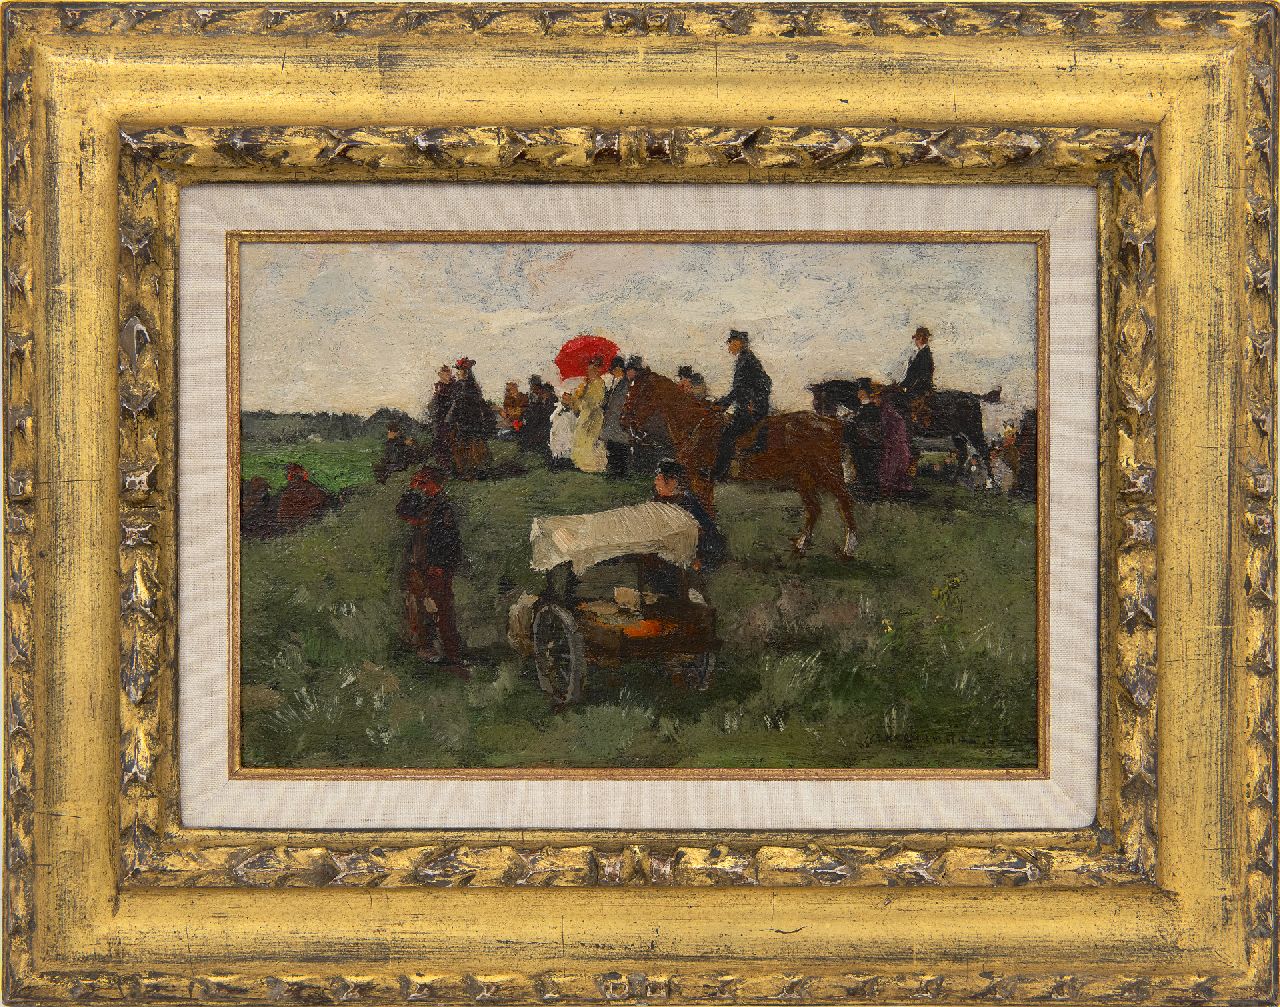 Akkeringa J.E.H.  | 'Johannes Evert' Hendrik Akkeringa | Schilderijen te koop aangeboden | Bij de wedrennen te Clingendael, olieverf op paneel 16,5 x 25,0 cm, gesigneerd rechtsonder en te dateren ca. 1898